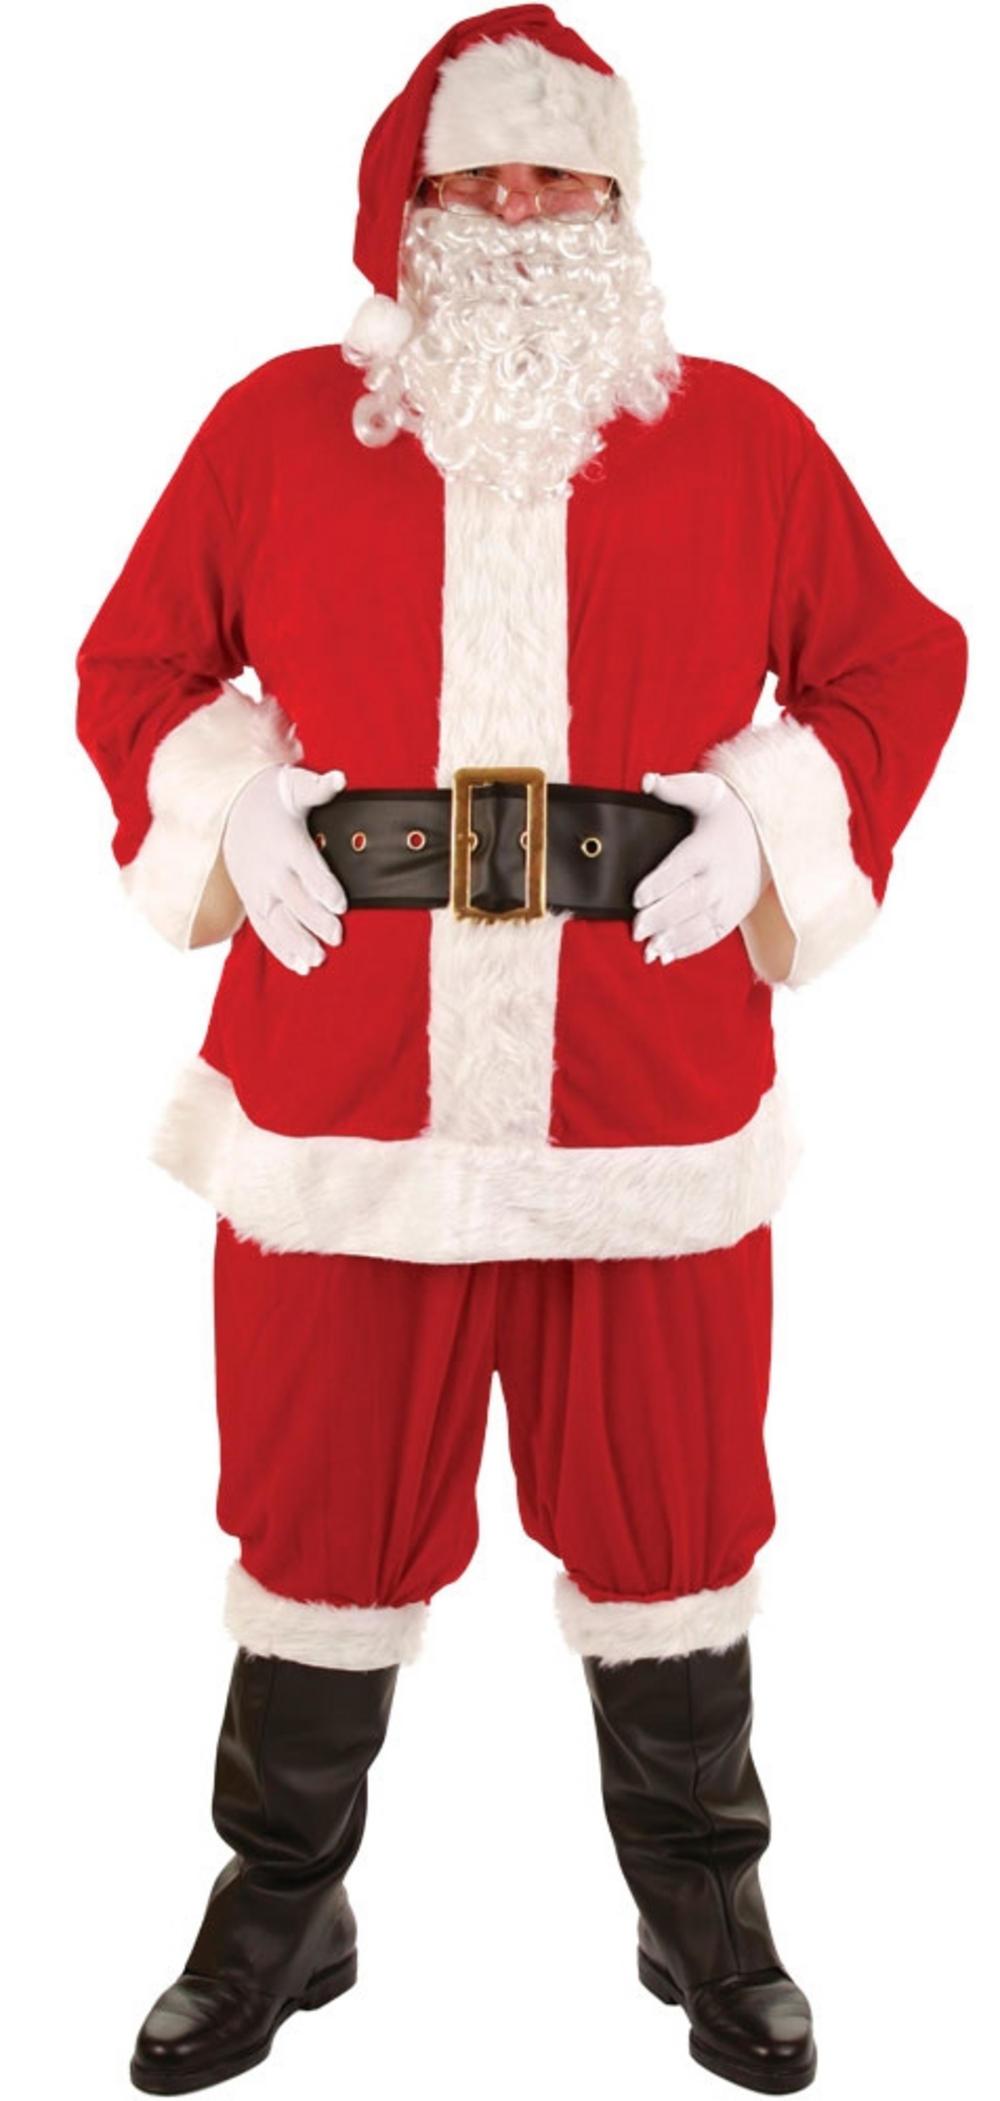 Super Deluxe Santa Claus Costume